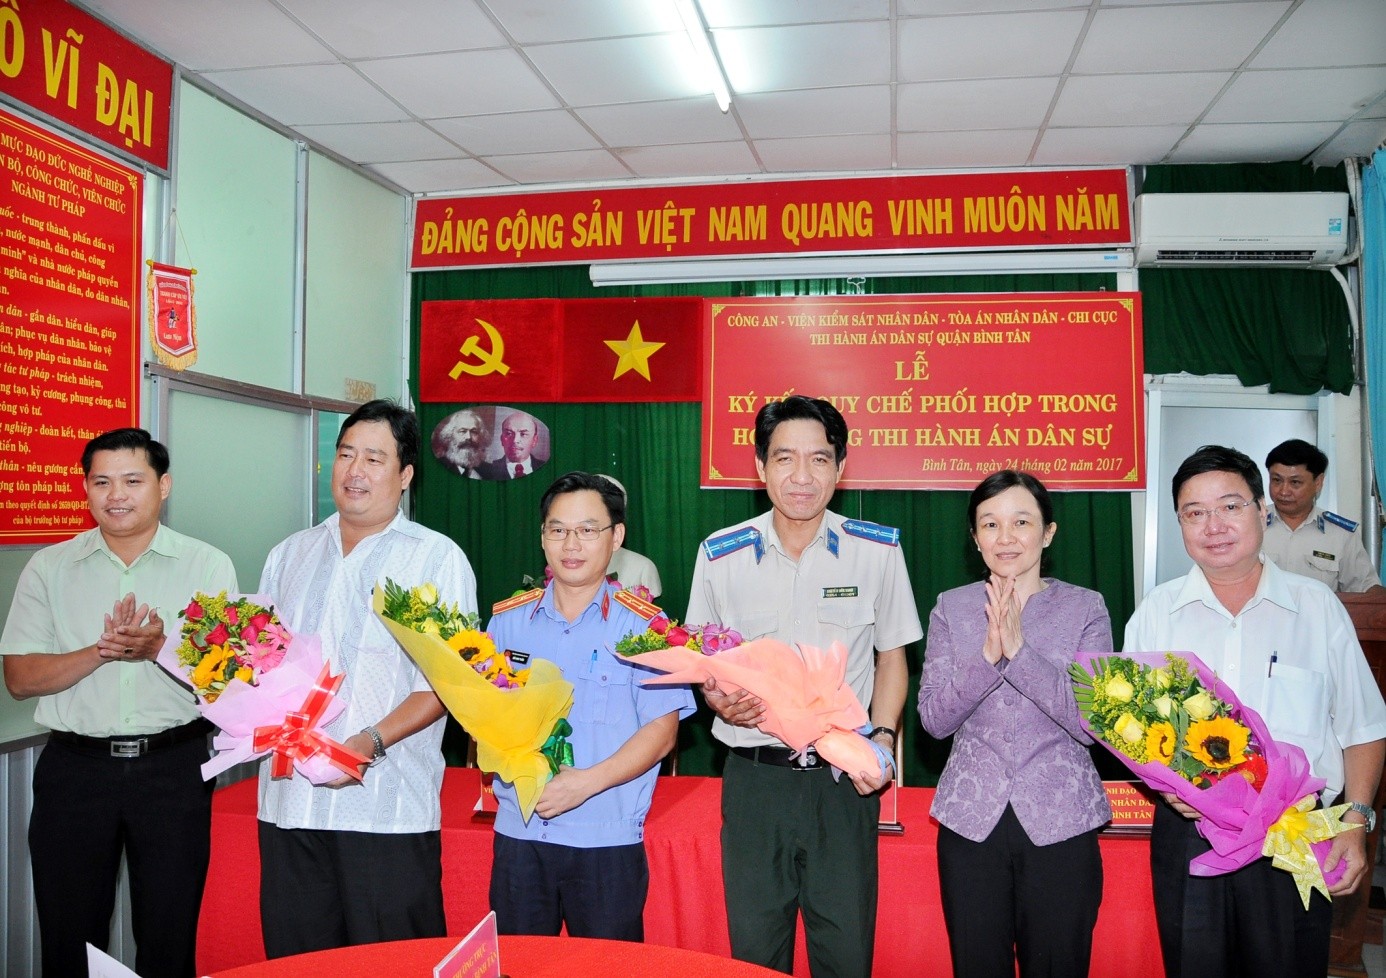 Lễ ký kết Quy chế Phối hợp liên ngành trong công tác thi hành án dân sự tại quận Bình Tân